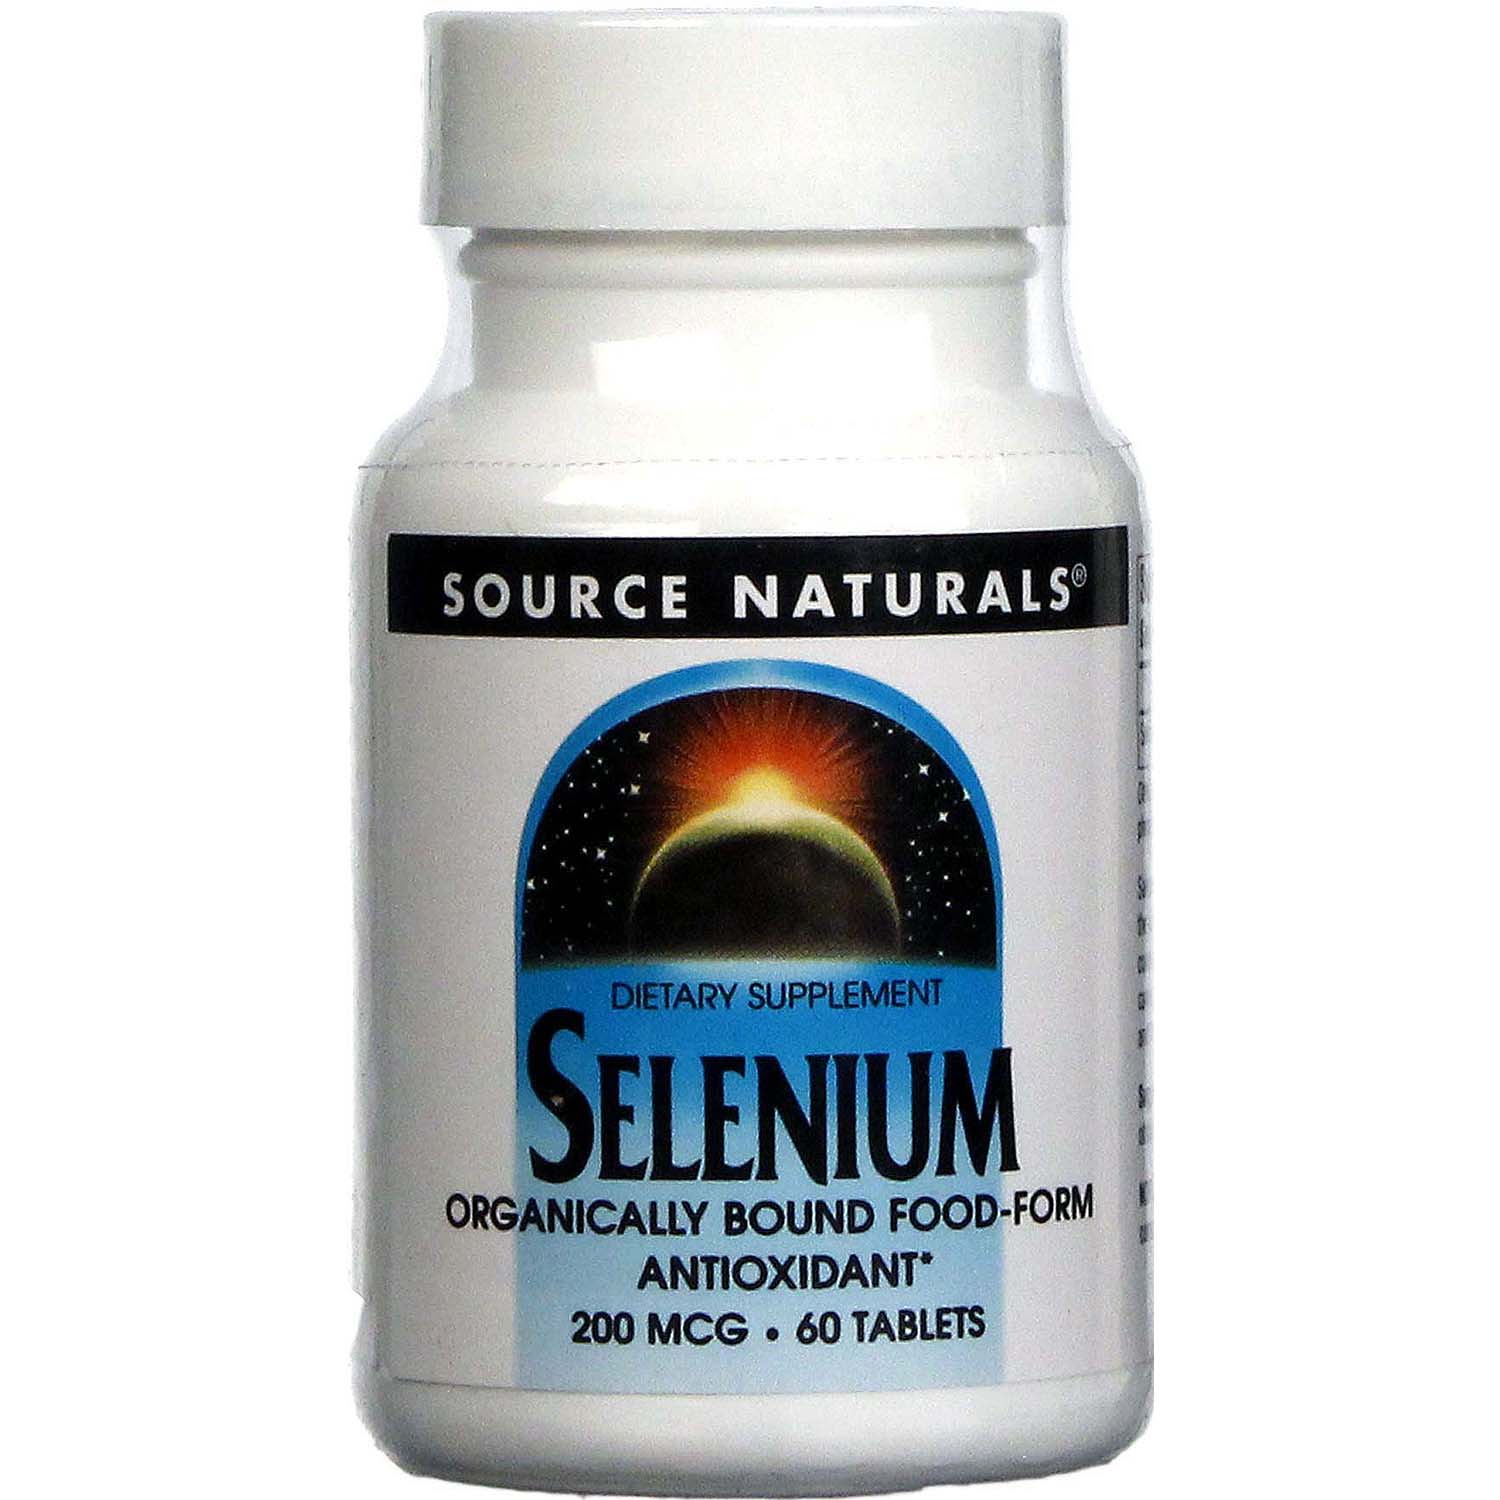 Source Naturals Selenium, 200 mcg, 60 Tablets